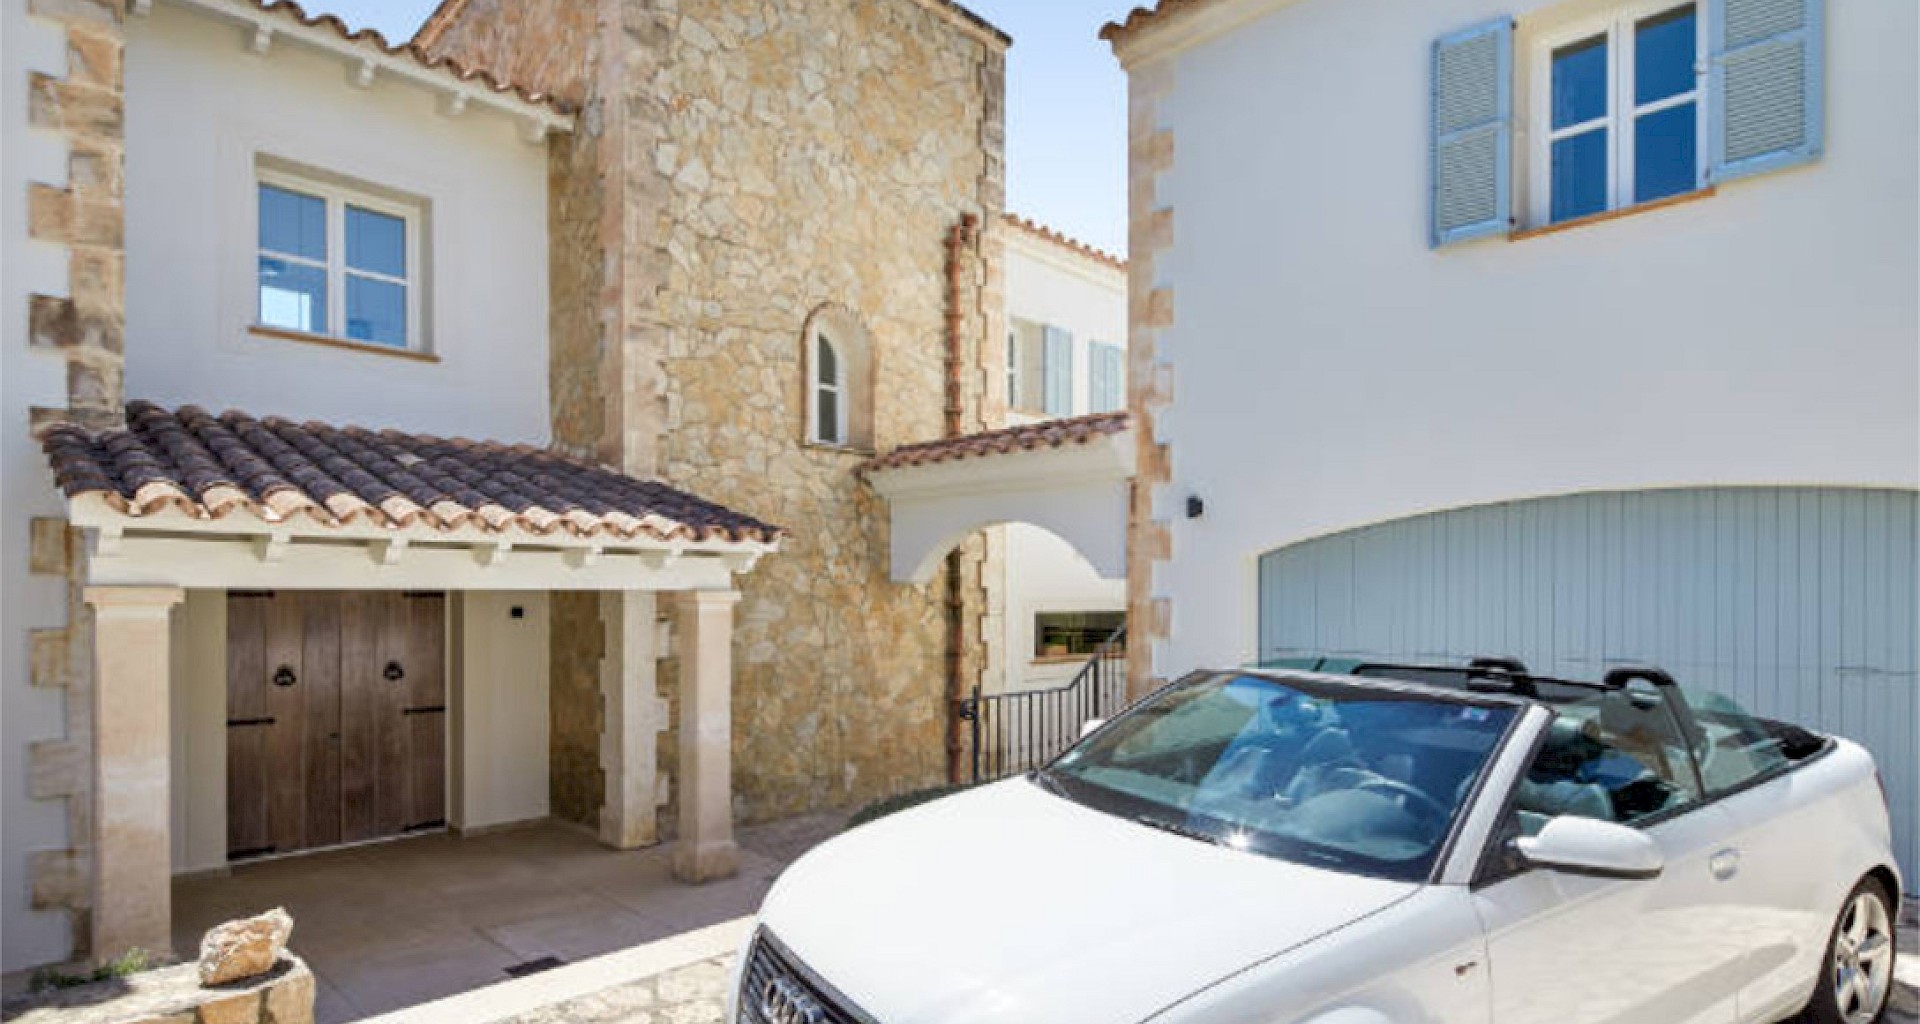 KROHN & LUEDEMANN Mediterranean Family Villa completely renovated in best location in Santa Ponsa for sale Eingangsbereich